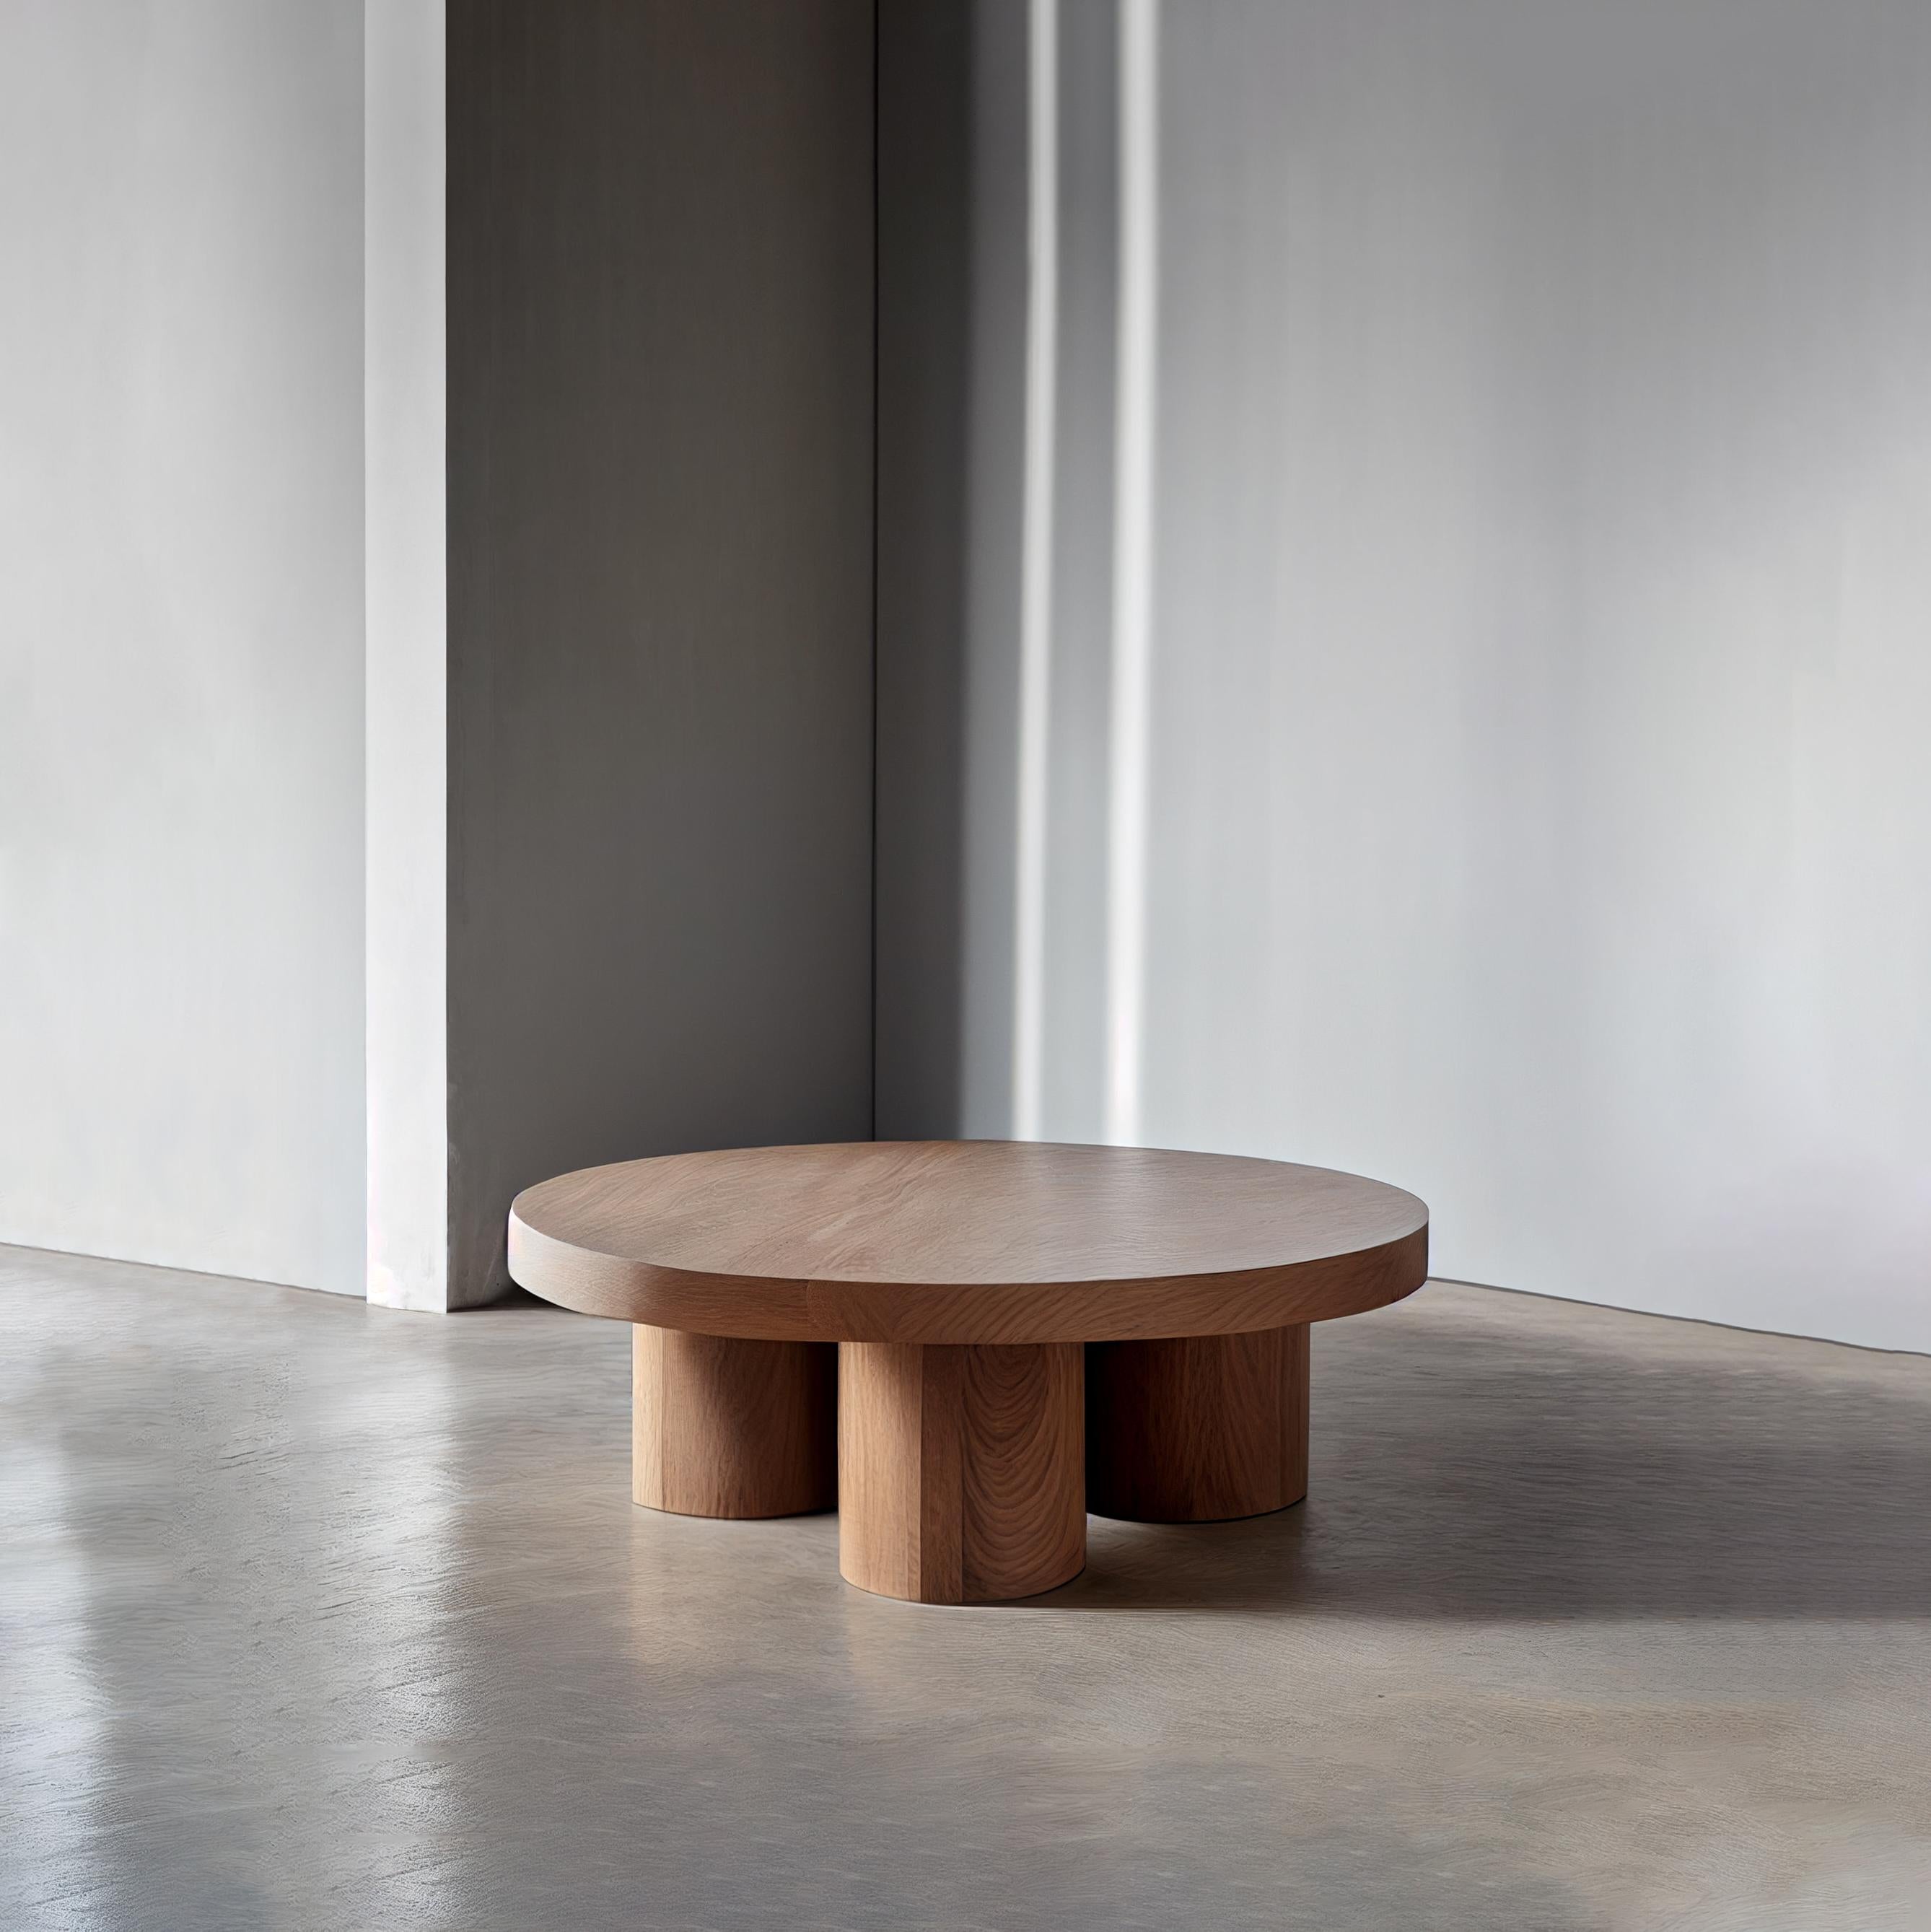 Table basse ronde brutaliste en placage de bois de chêne rouge, Podio par NONO

L'équipe de design de NONO présente une table basse qui respire l'élégance et la modernité. La base de cette pièce est un ensemble de colonnes cylindriques, qui